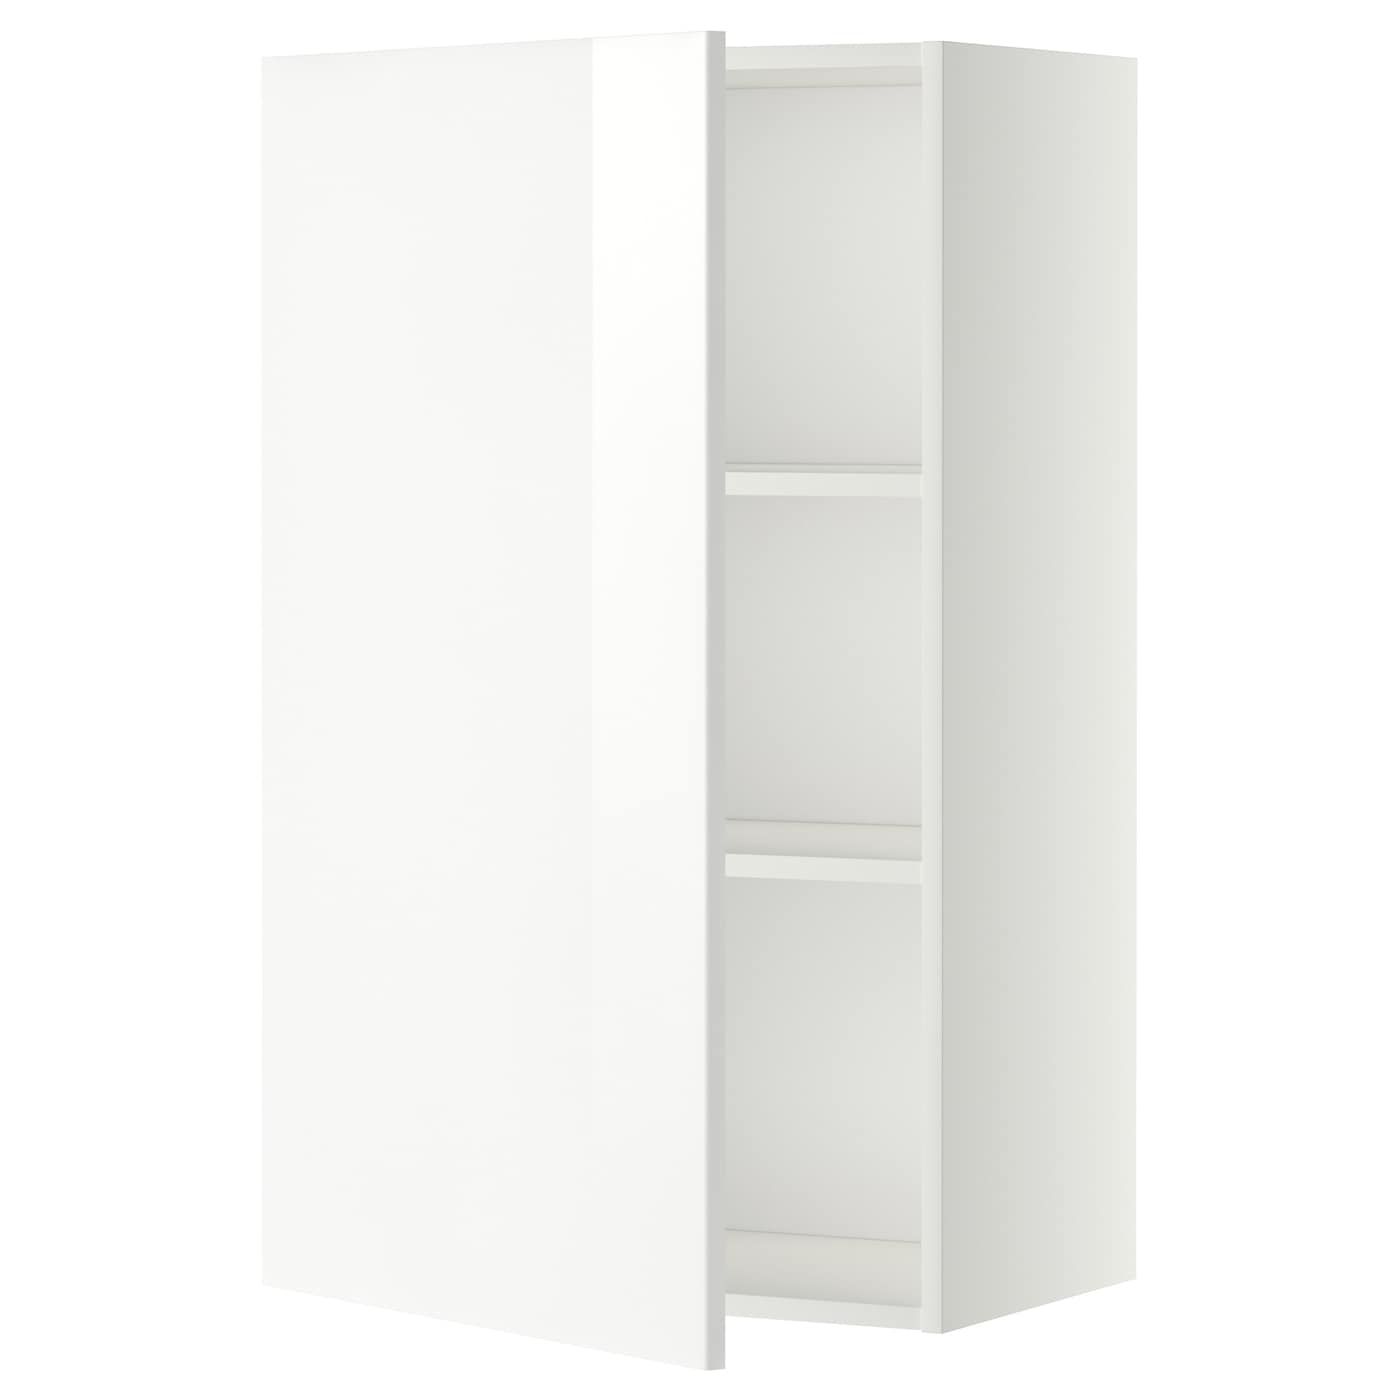 Навесной шкаф с полкой - METOD IKEA/ МЕТОД ИКЕА, 100х60 см, белый